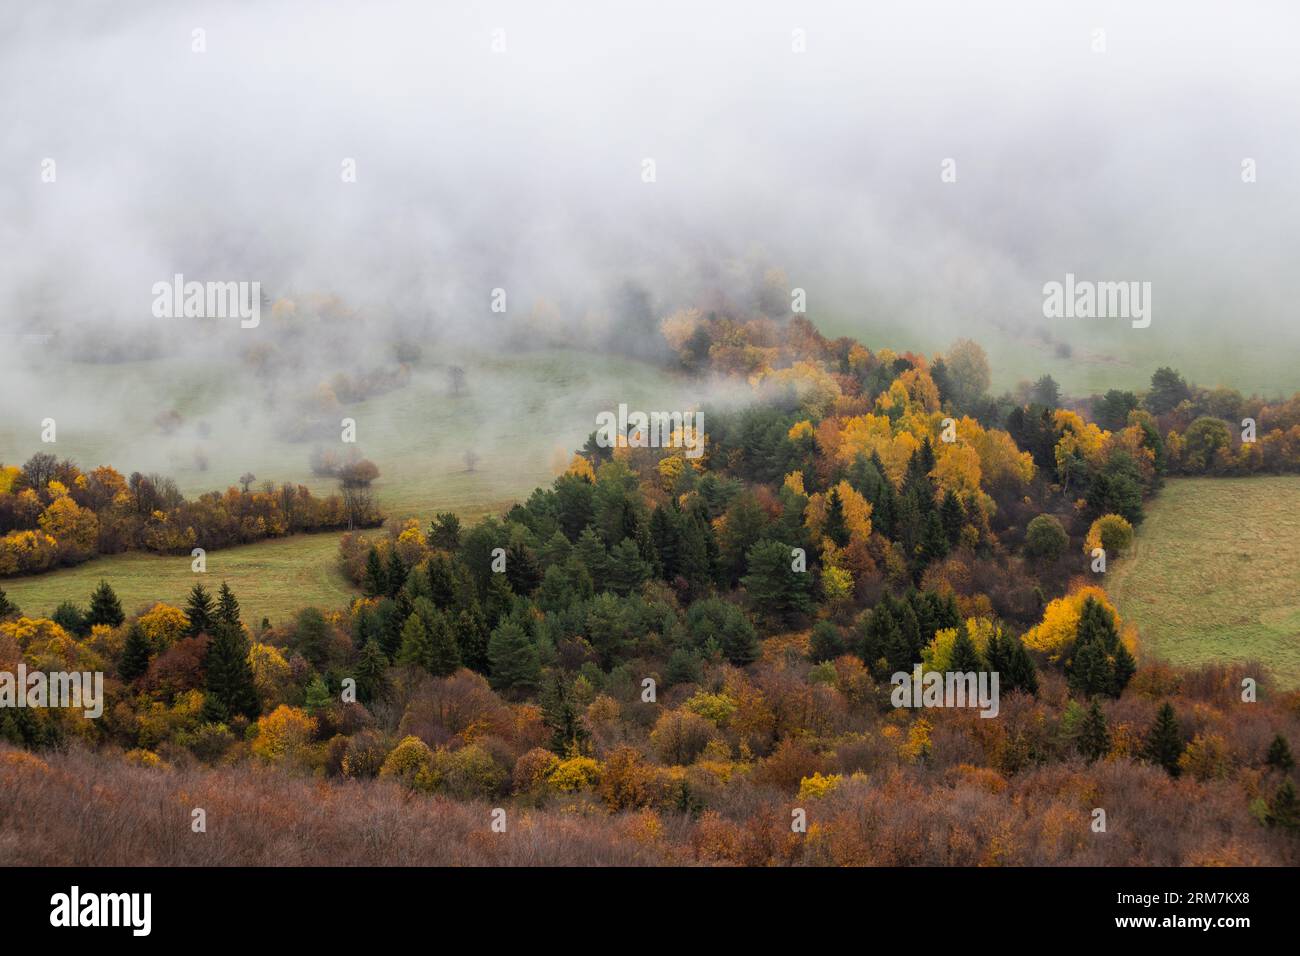 Forêt dans le brouillard à l'heure d'automne Banque D'Images